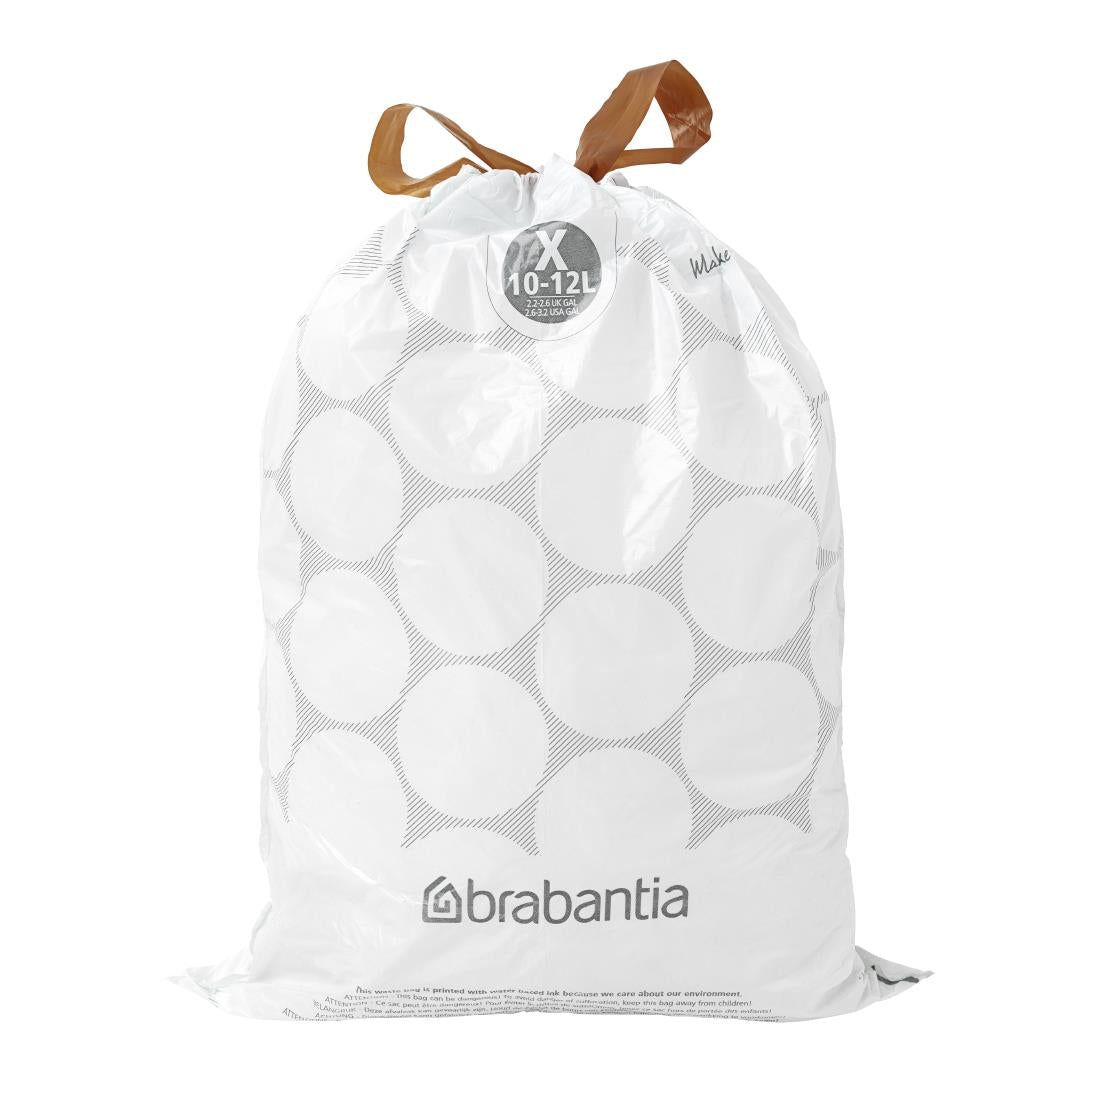 Brabantia PerfectFit Bin Bags X 10-12 Litre (Pack of 40)